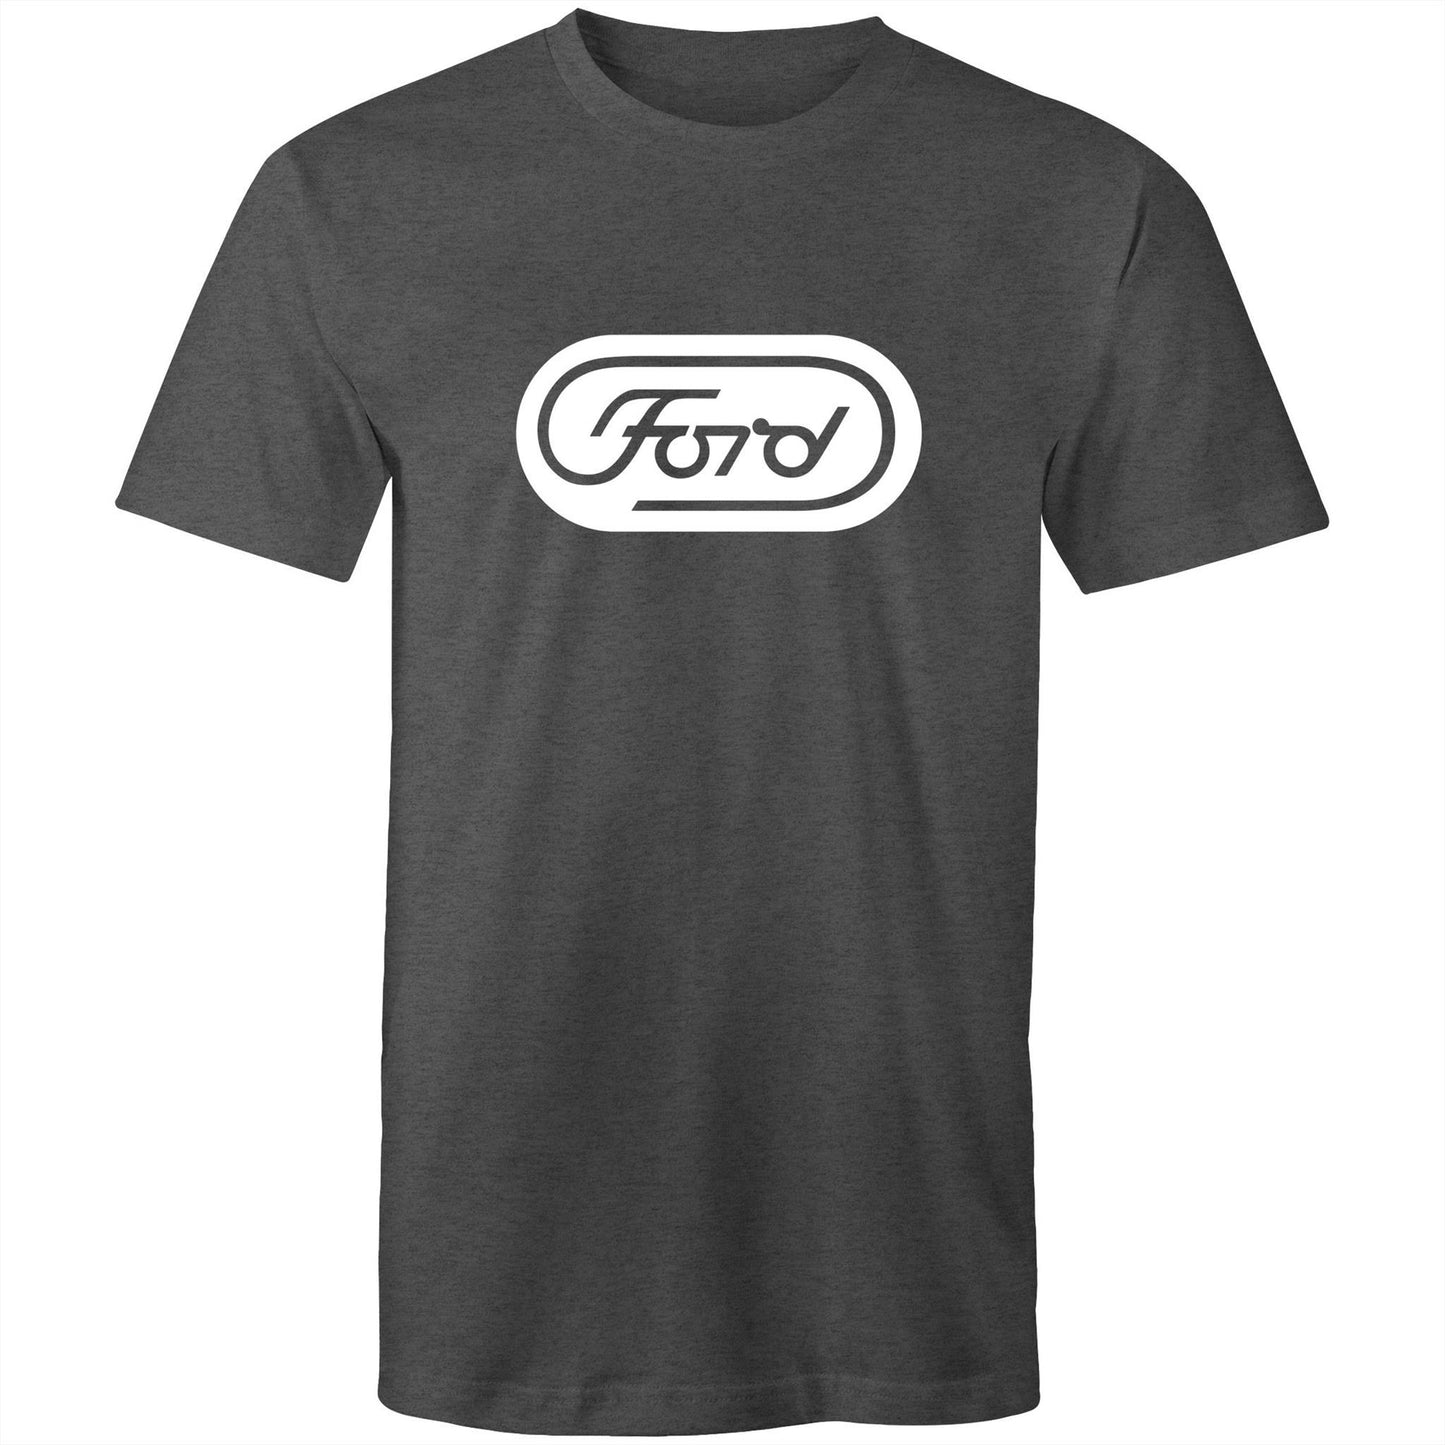 Ford Retro Typeset Logo Tee